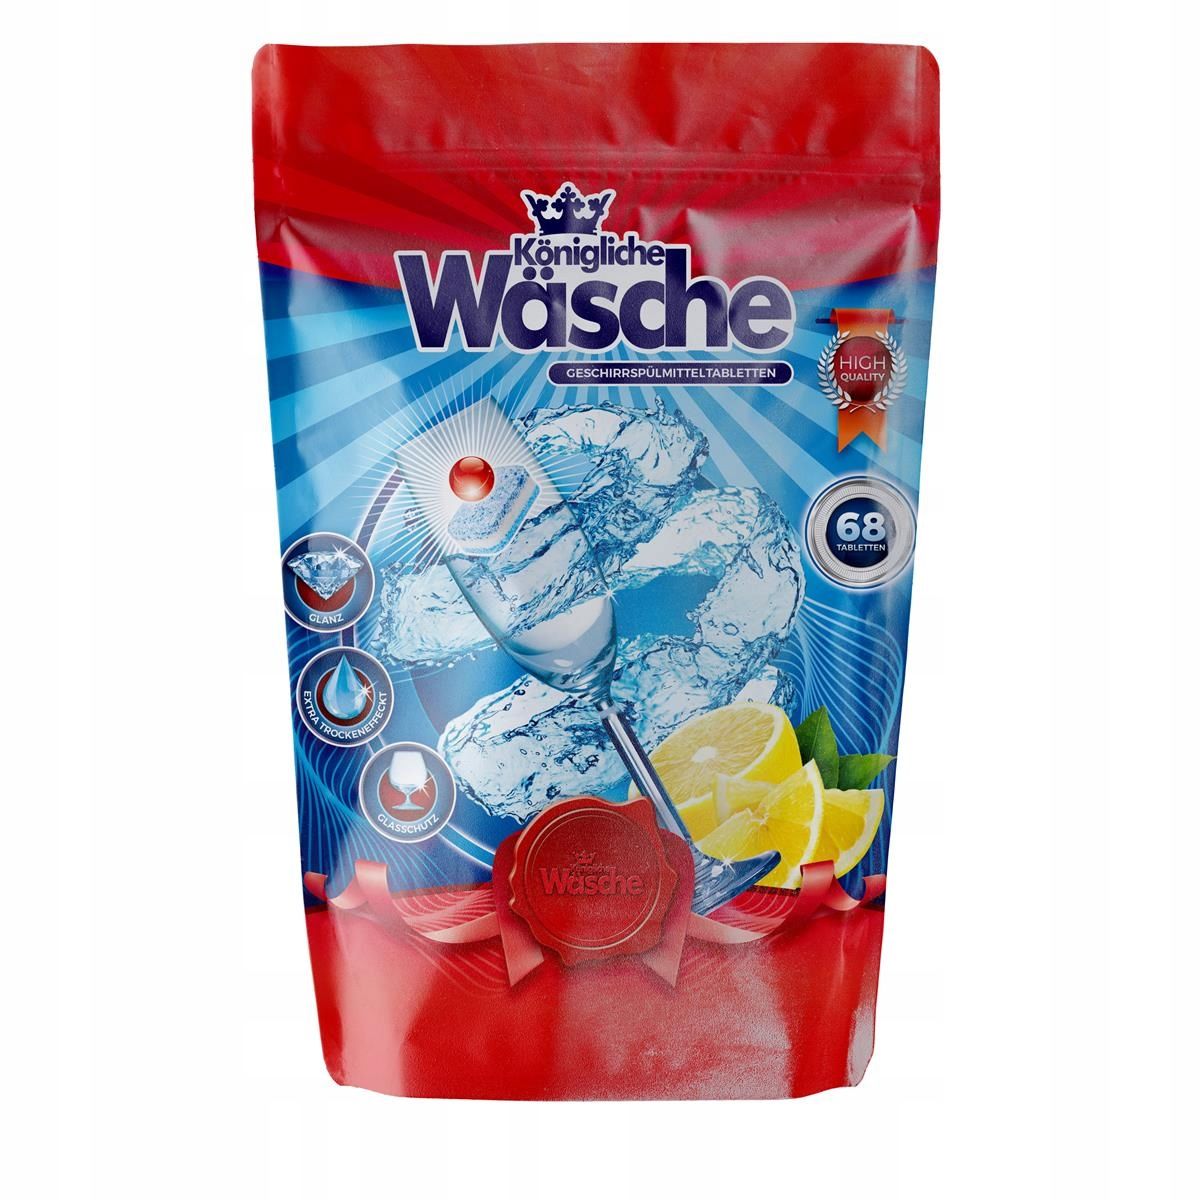 Таблетки для посудомоечной машины Konigliche Wasche (Германия, 68шт )